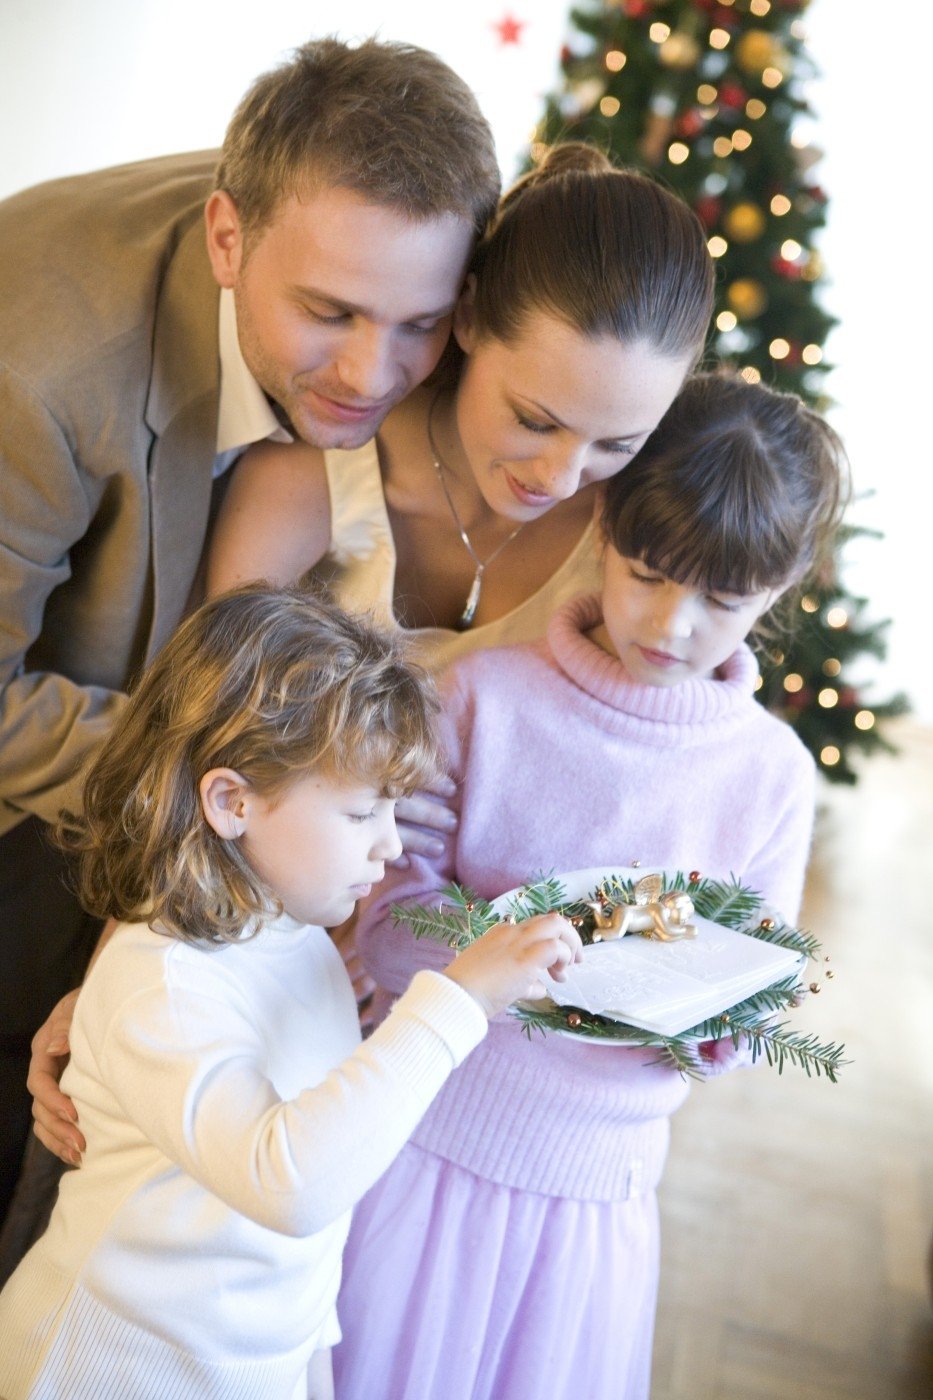 Vánoce jsou především pro děti, proto se jim maximálně věnujte.